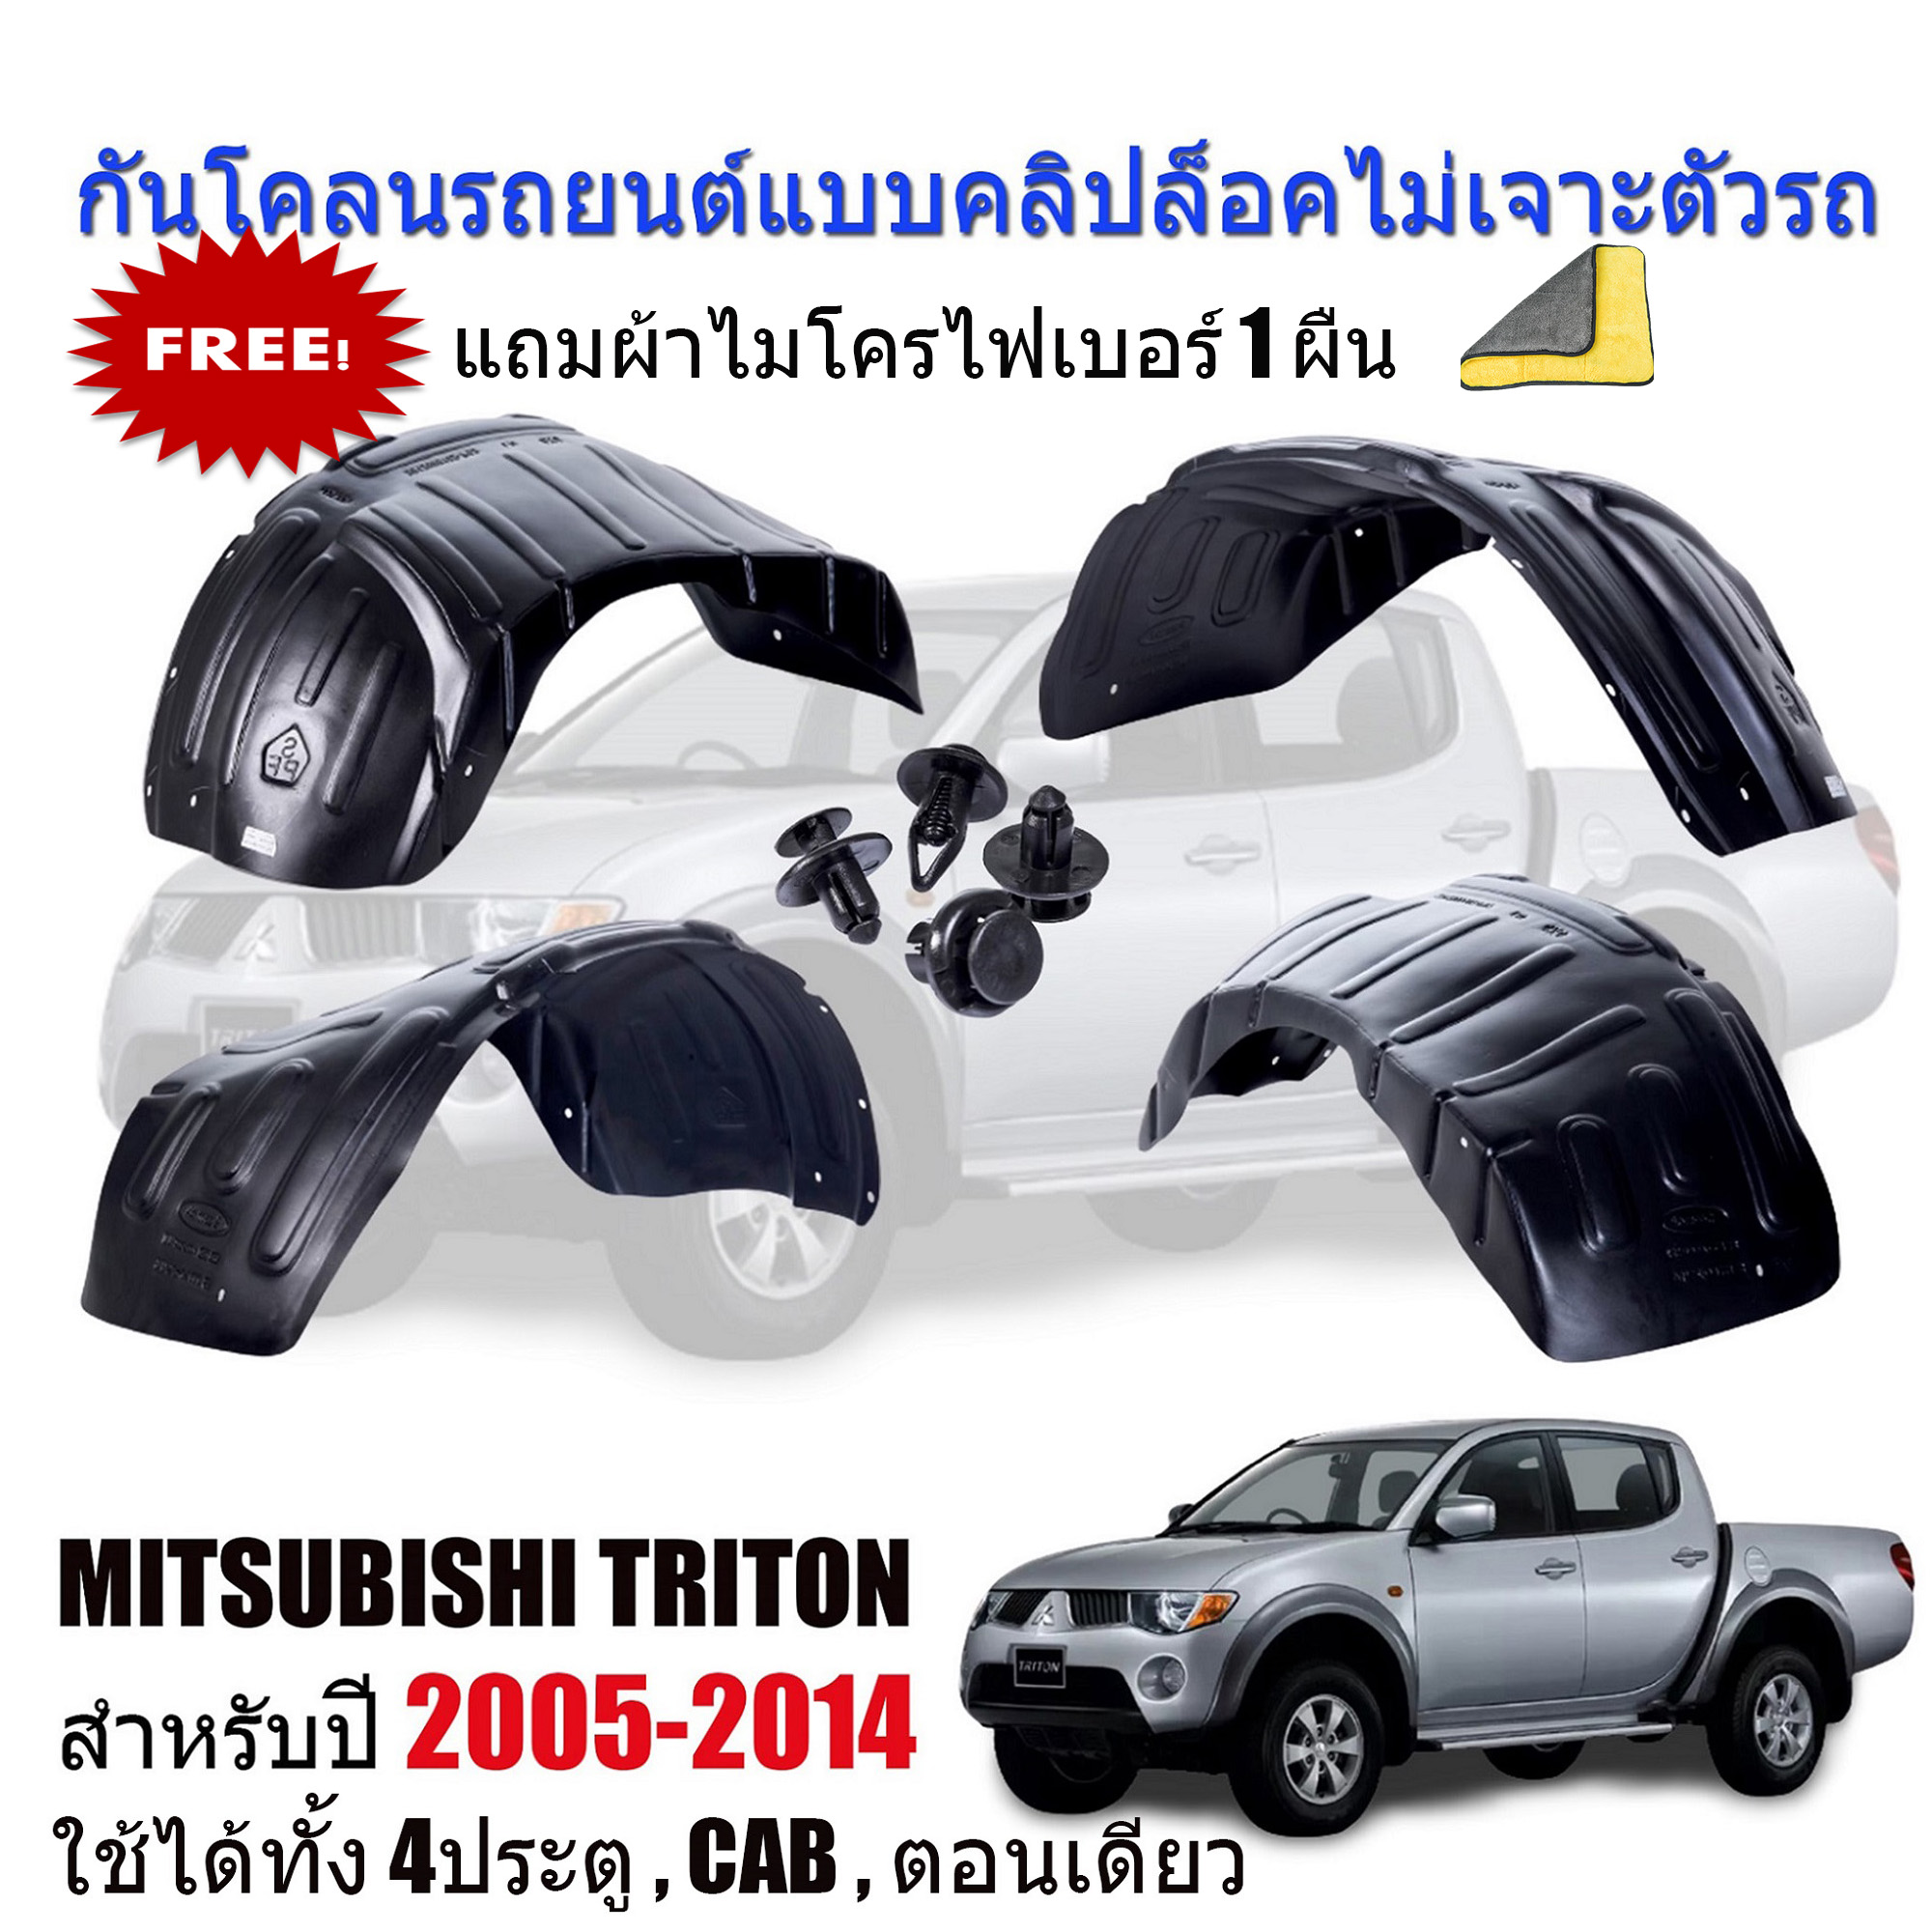 กันโคลนรถยนต์ MITSUBISHI TRITON ปี 2005-2014 (แบบคลิ๊ปล็อคไม่เจาะตัวรถ) (ใช้ได้ทุกรุ่น 4D,CAB,ตอนเดียว) ซุ้มล้อ บังโคลน กรุล้อ กันโคลน บังโคลนรถยนต์